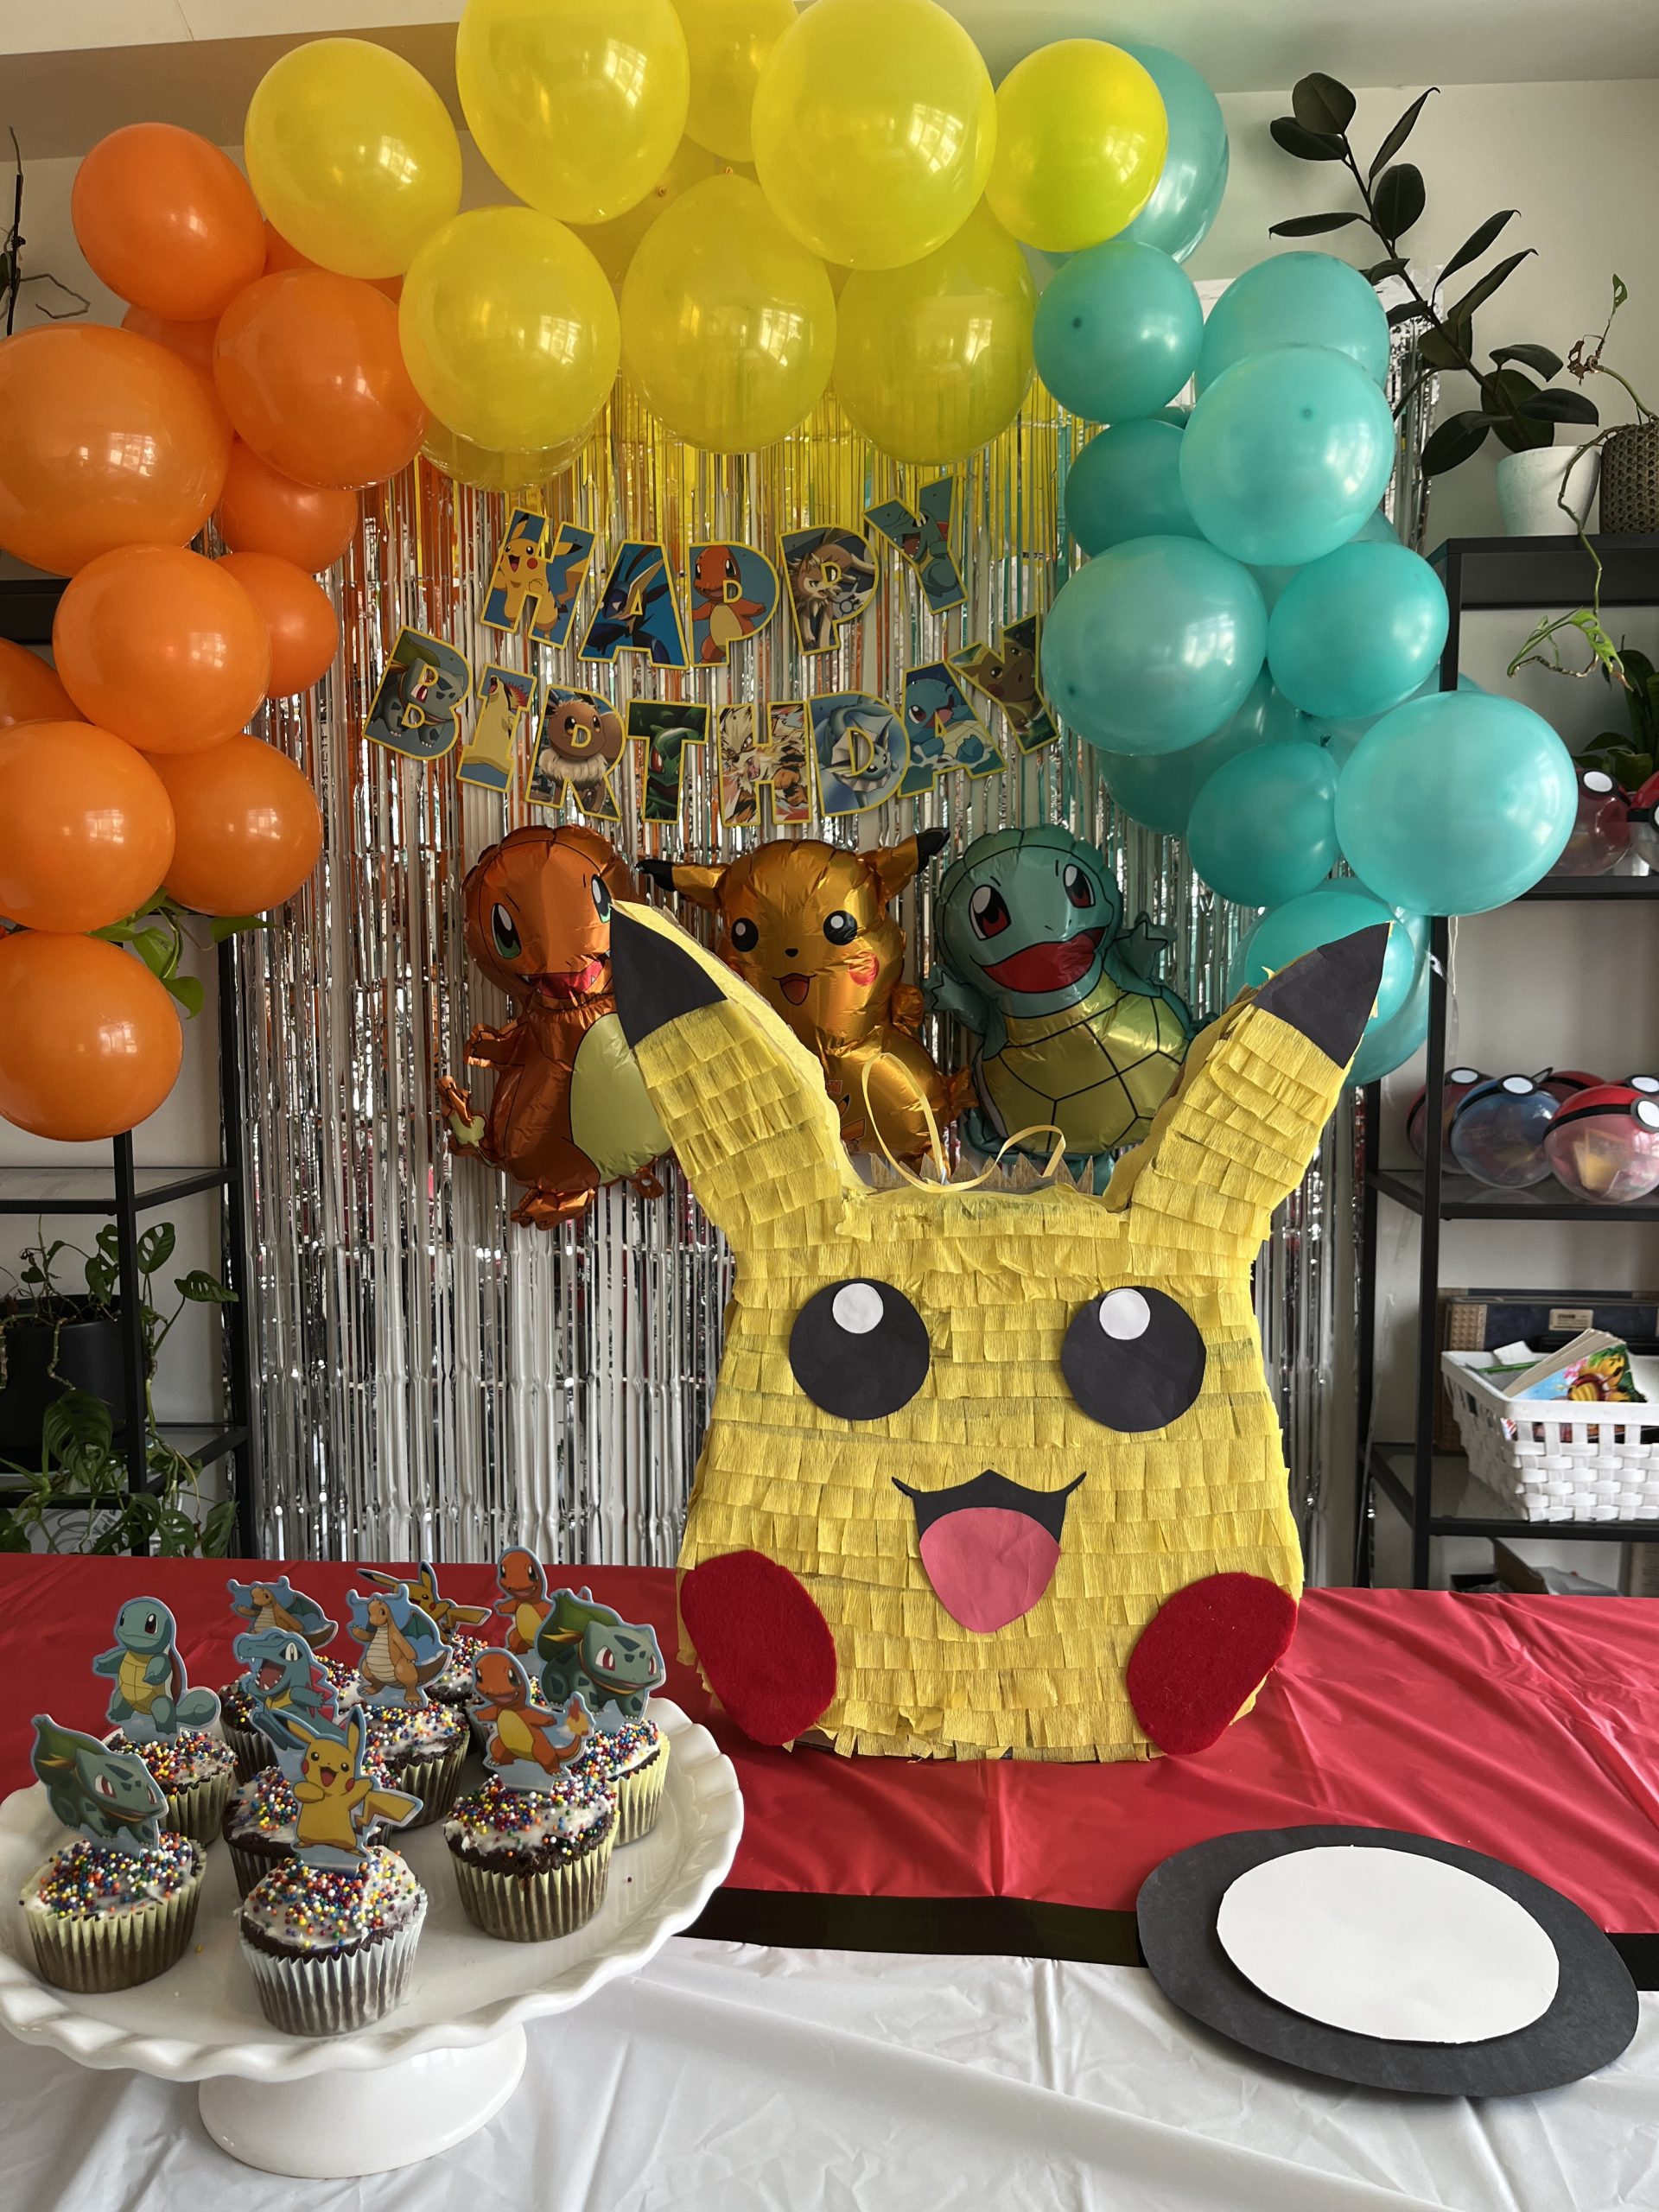 Pokemon birthday party ideas - Hana's Happy Home